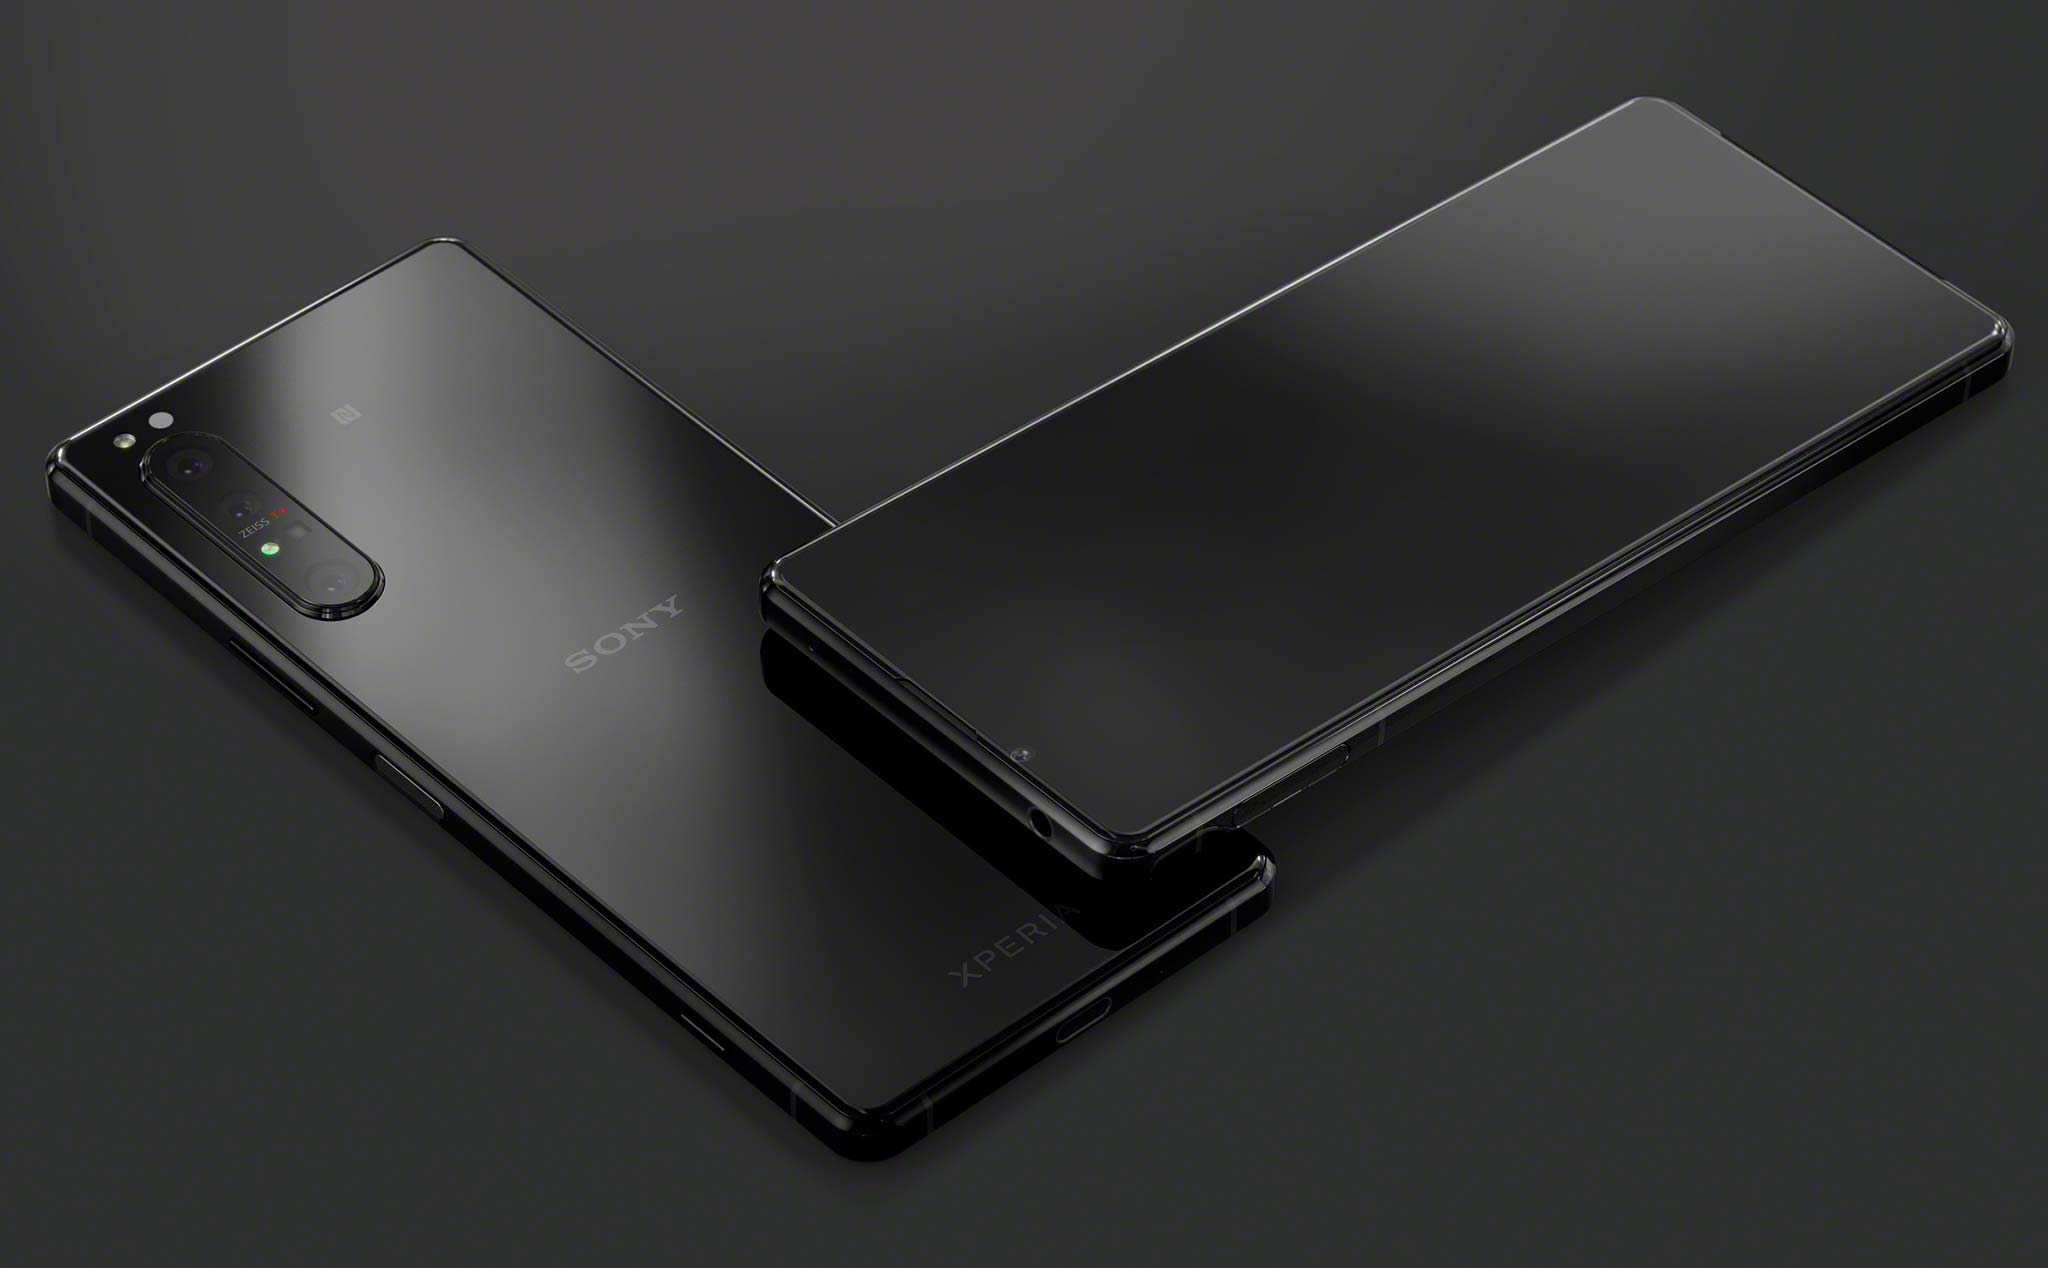 Sony Xperia 1 II chính thức: màn hình 6,5" OLED 4K 90 Hz, camera ống kính Zeiss, Snapdragon 865 5G